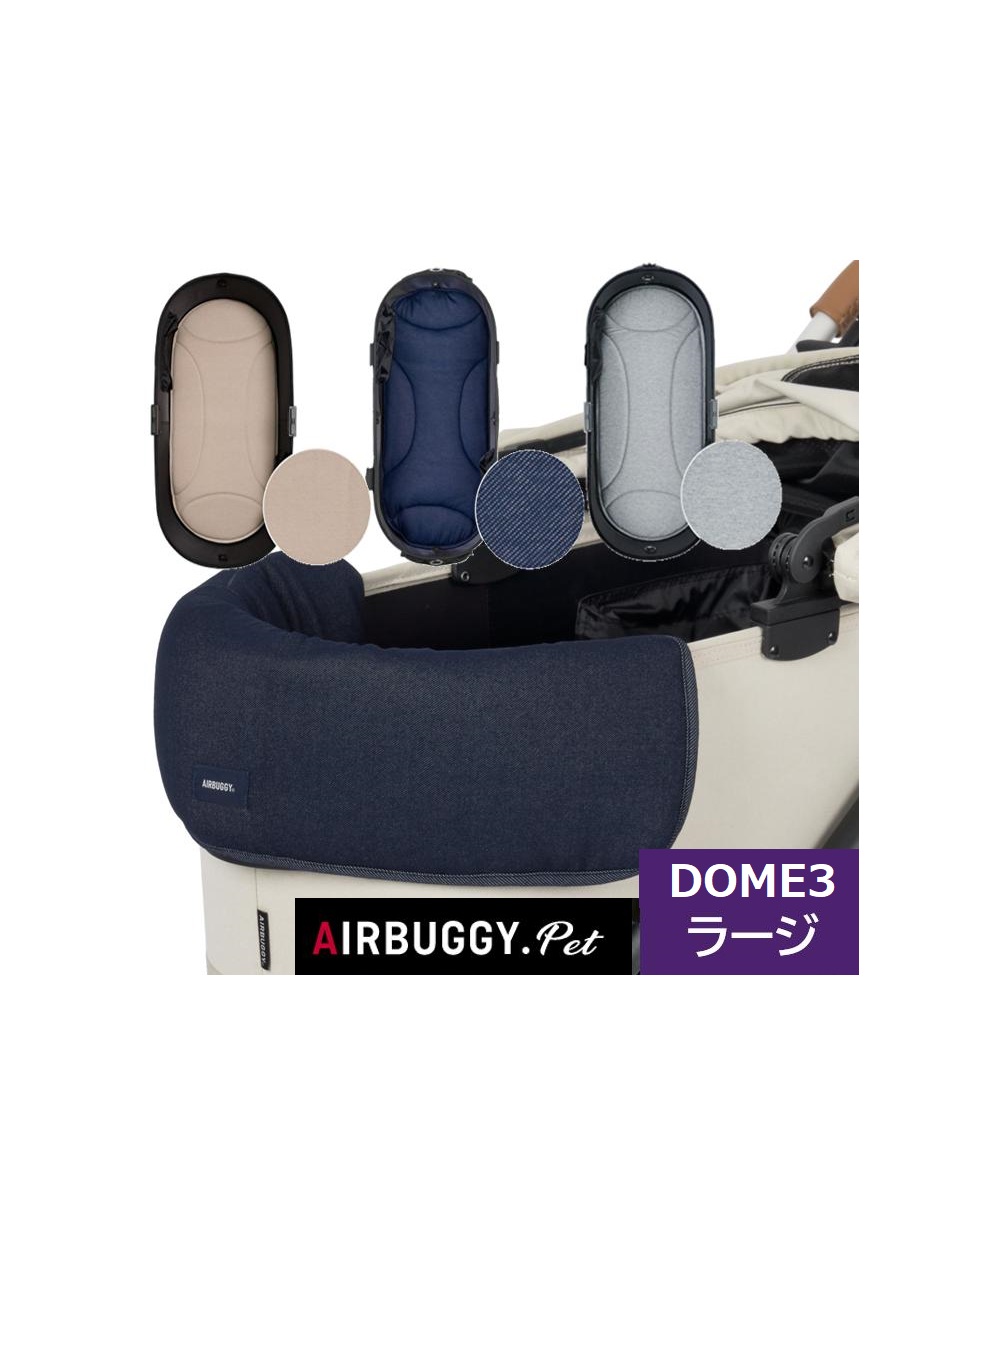 エアバギー DOME3専用 あご乗せクッションと専用マット（ラージサイズ）のセット ペットカートドッグカート パーツ airbuggy for dogアイキャッチ画像